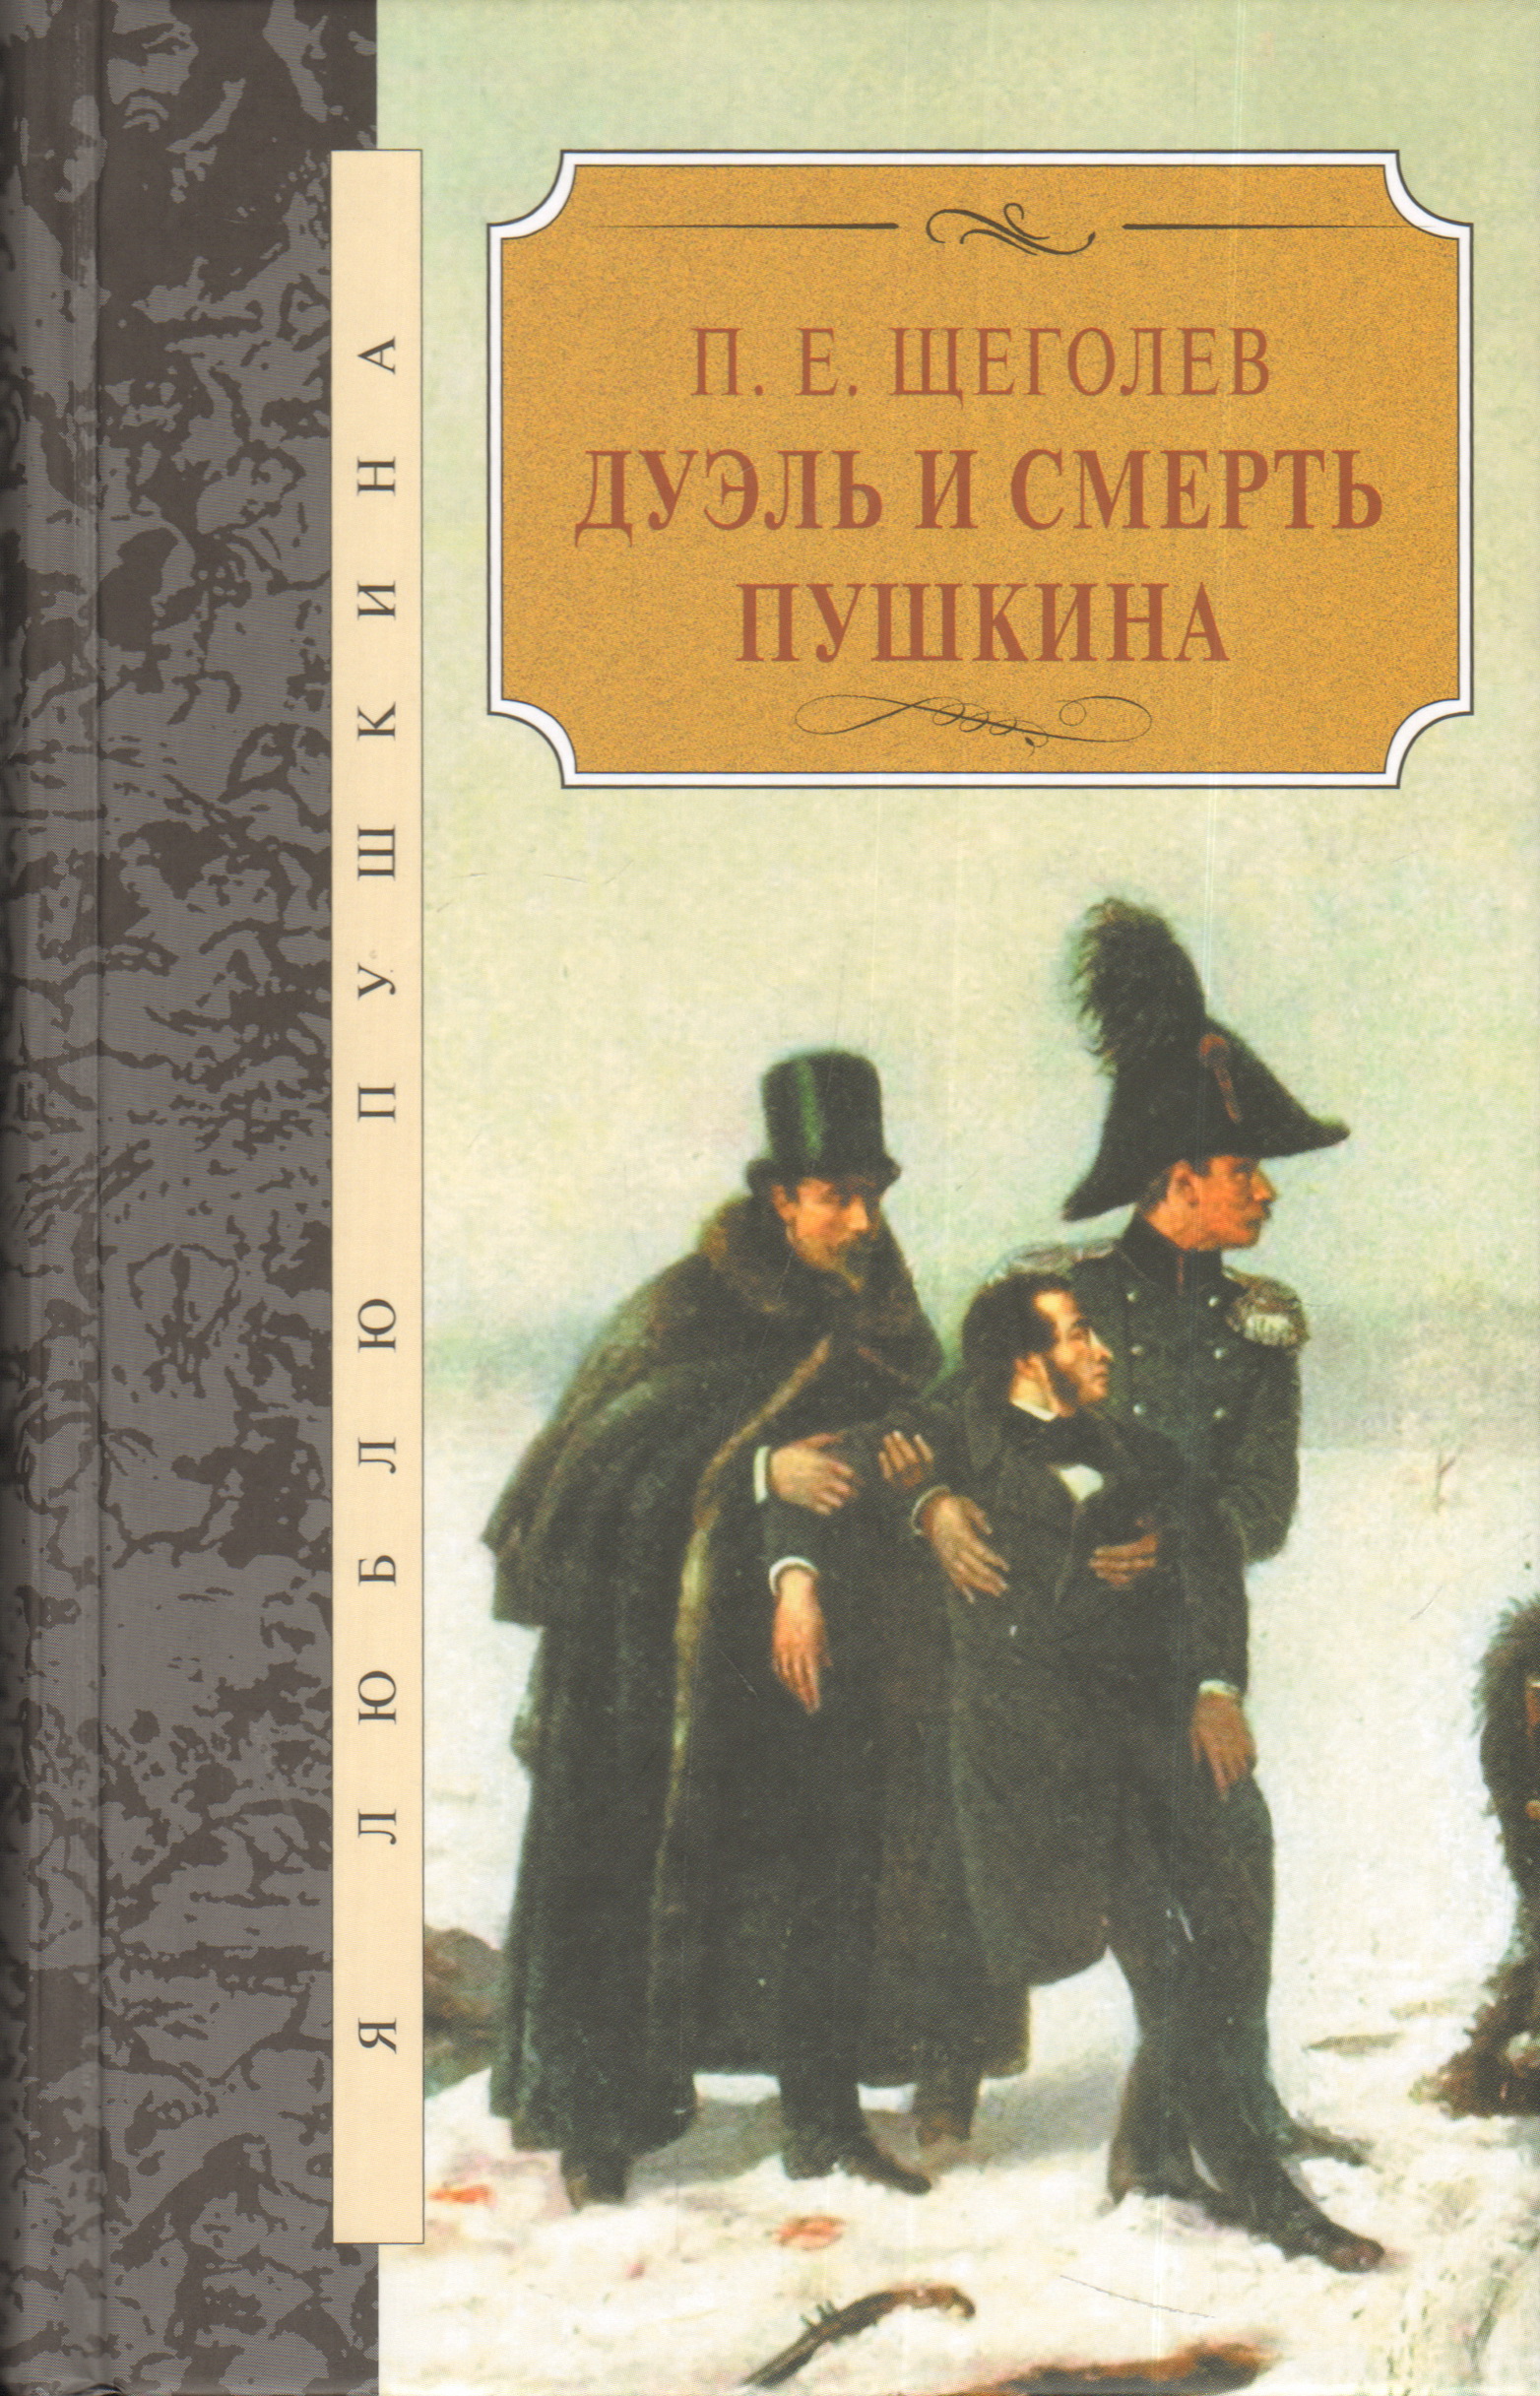 Книги о дуэли и смерти Пушкина